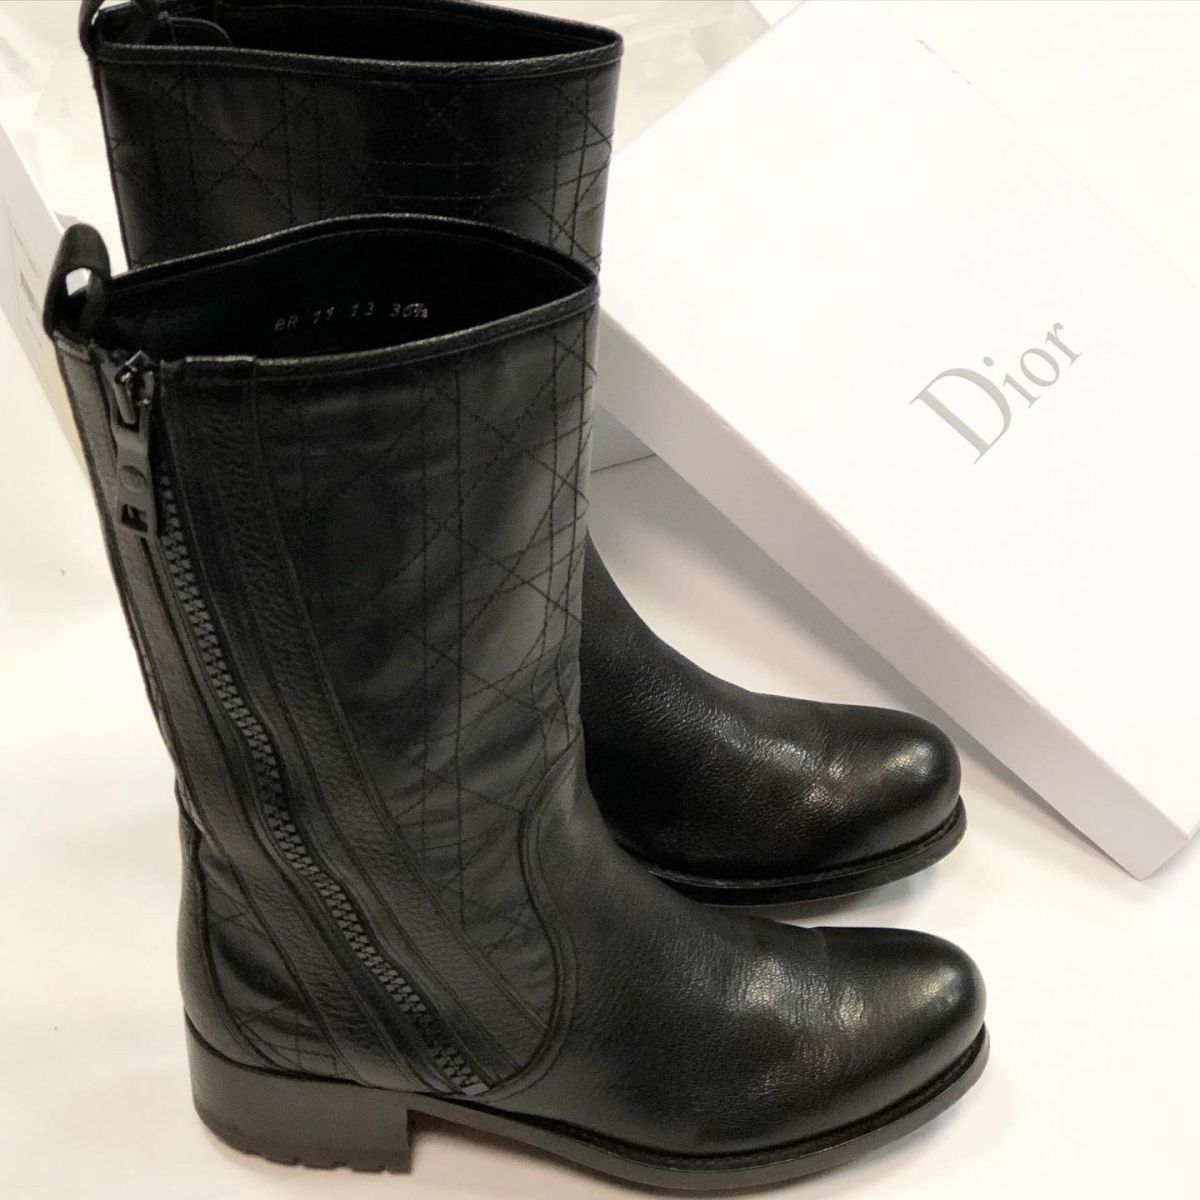 Сапожки Christian Dior размер 36.5 цена 23 078 руб 